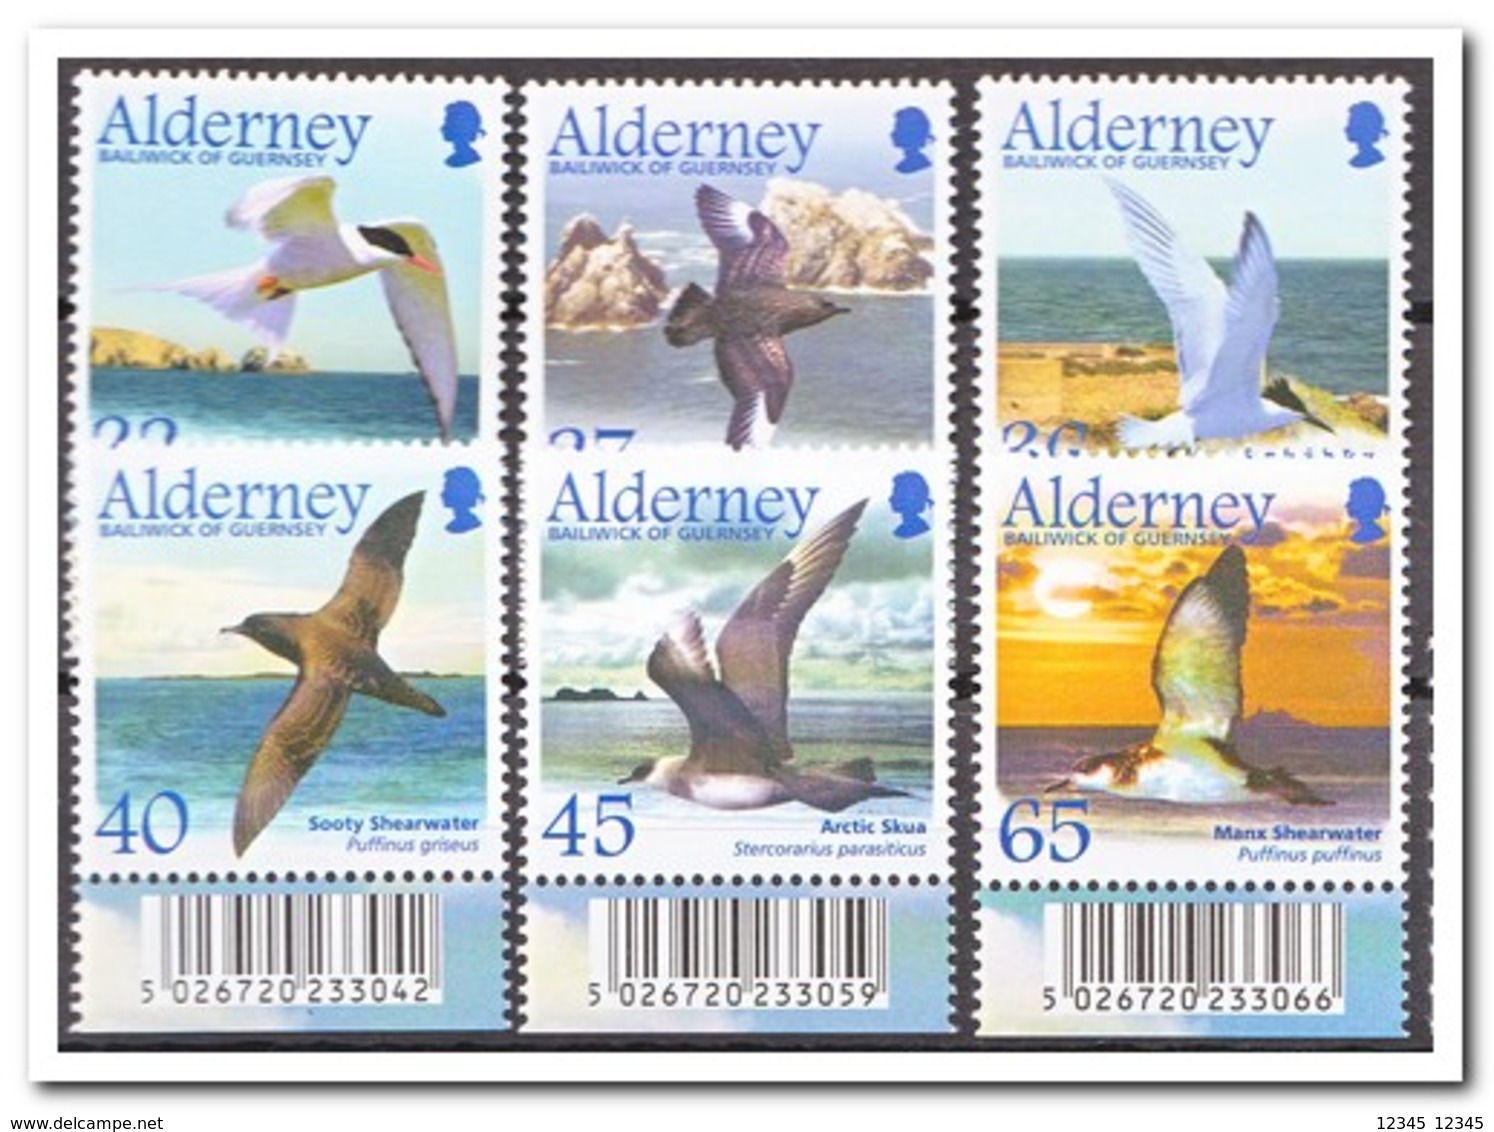 Alderney 2003, Postfris MNH, Birds - Alderney